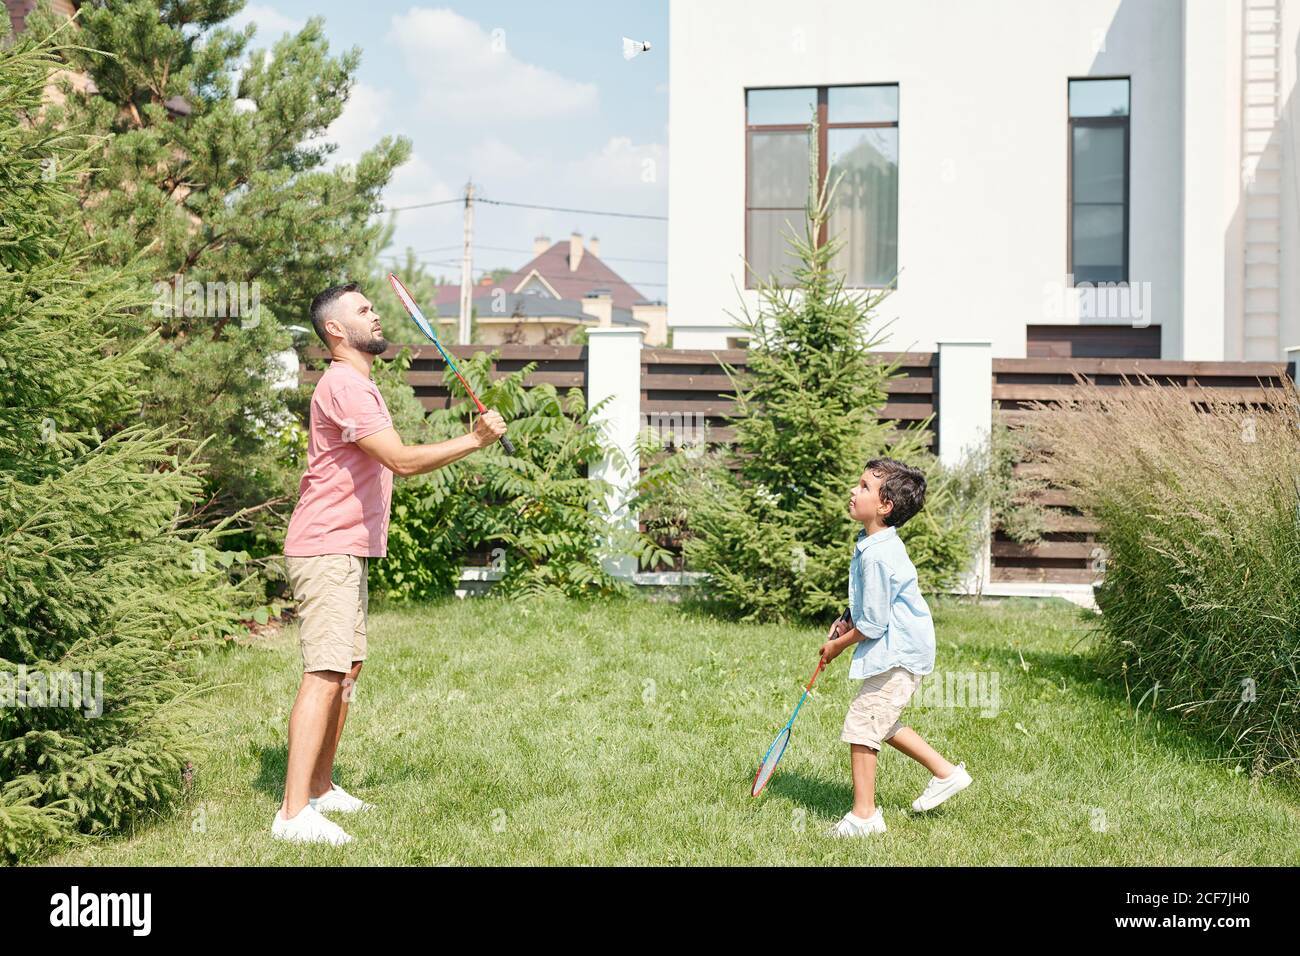 Junge Erwachsene Mann in lässigem Outfit Badminton spielen mit seinem kleinen Sohn auf Rasen im Hinterhof, Seitenansicht erschossen Stockfoto